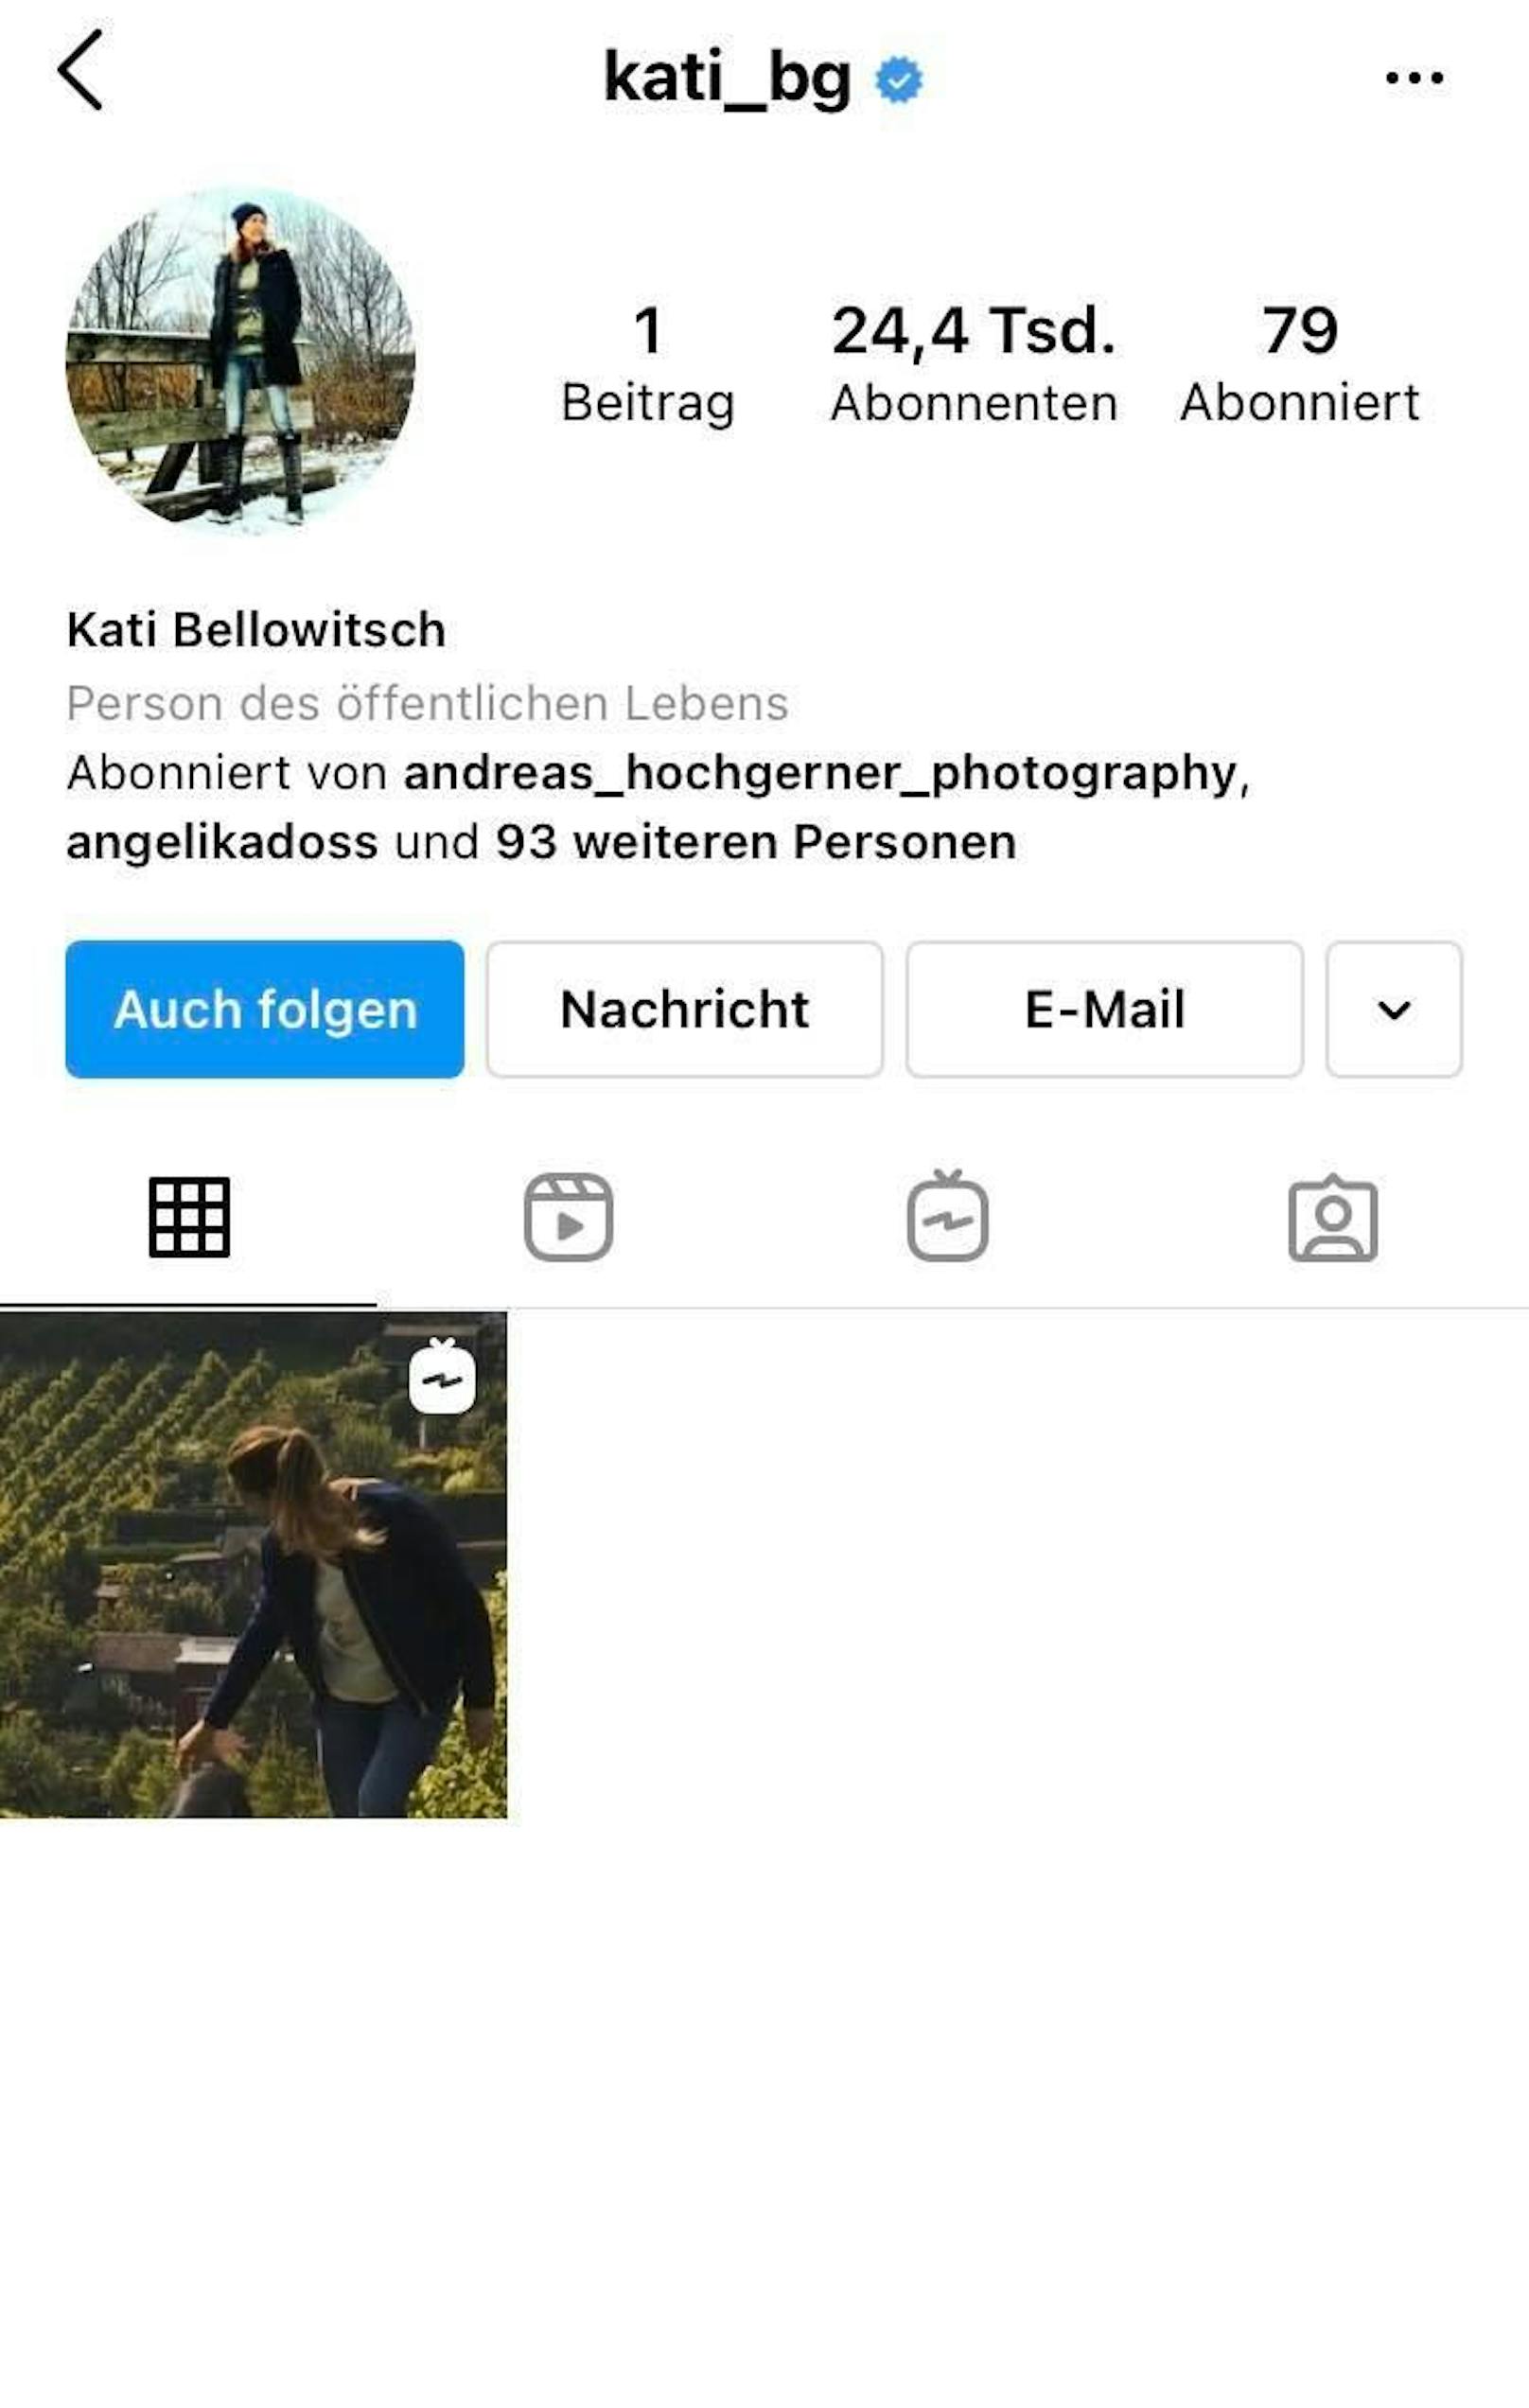 Kati Bellowitschs Insta-Account